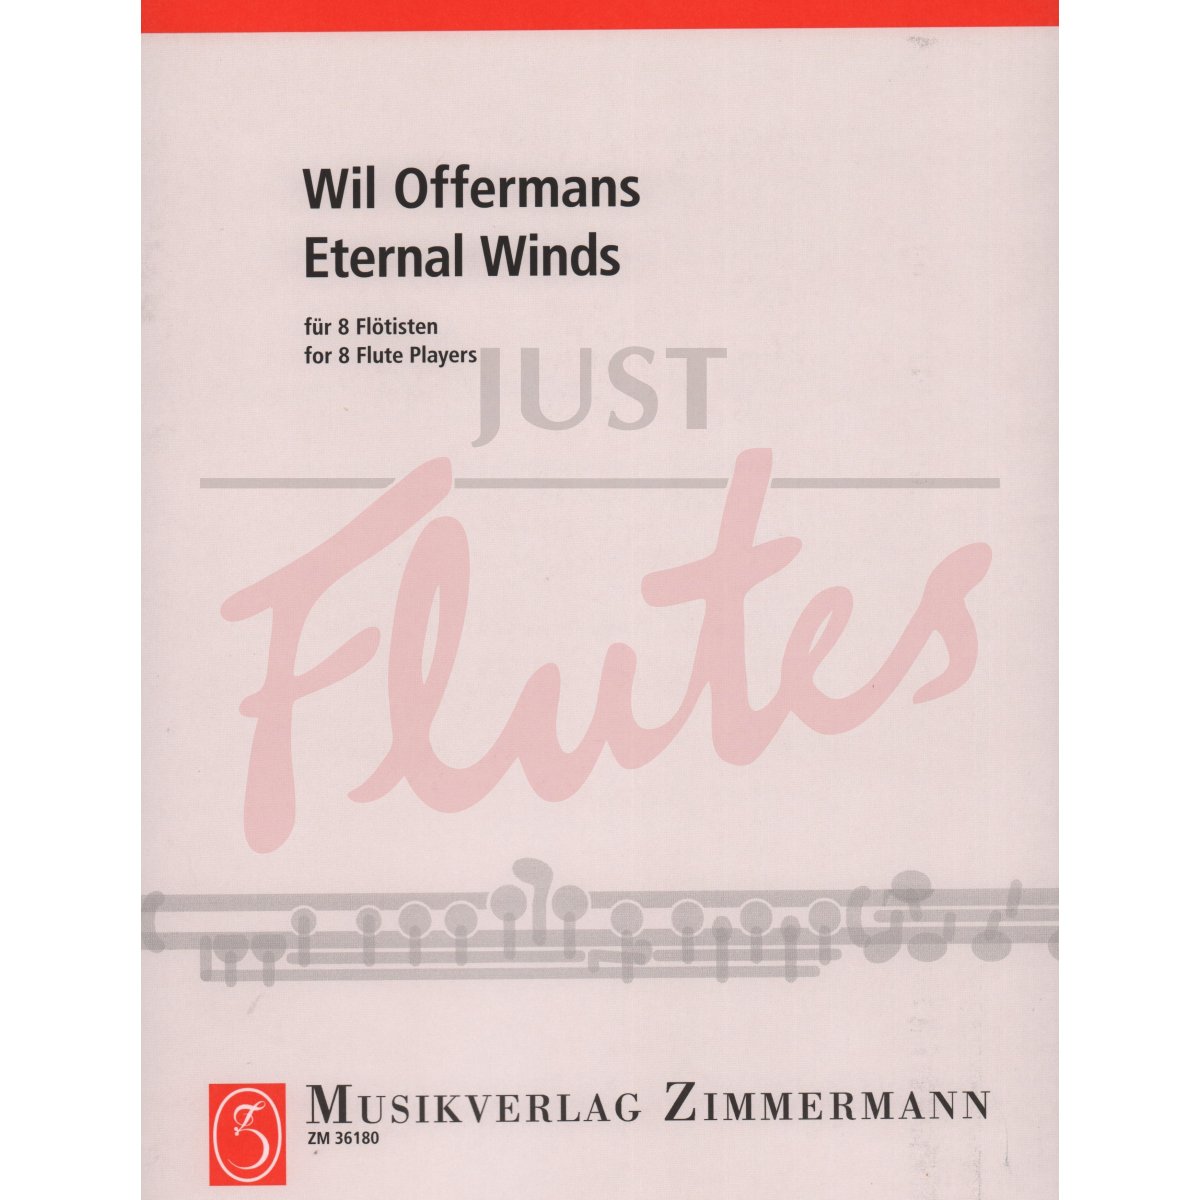 Eternal Winds for Flute Choir